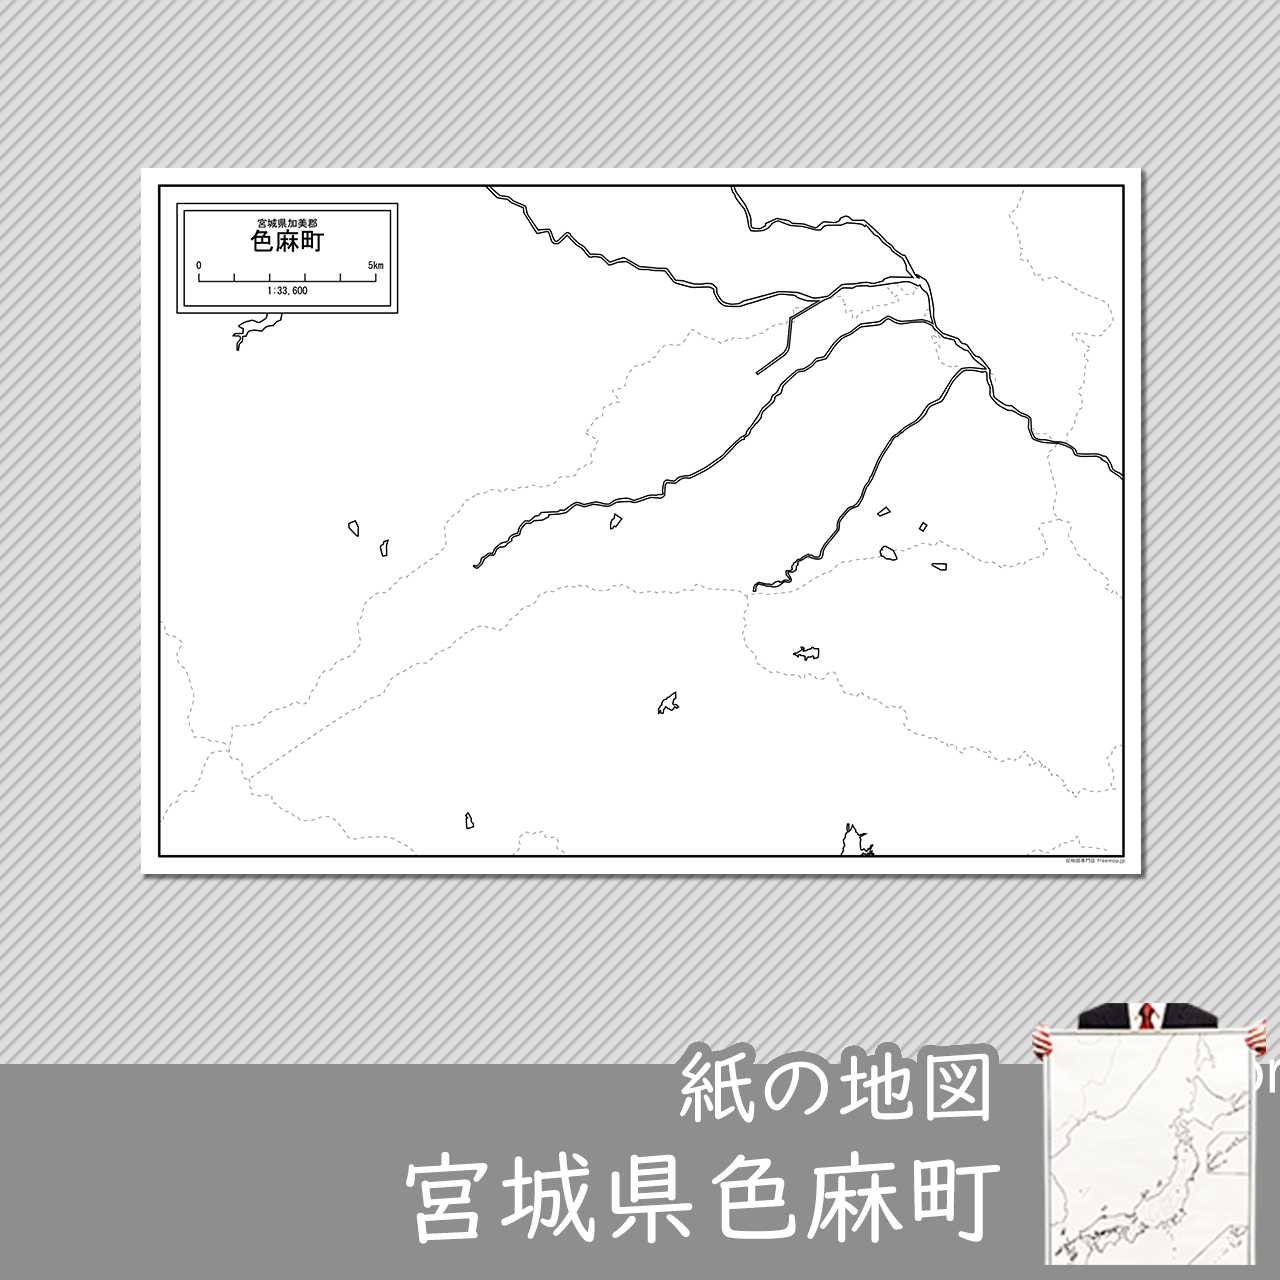 色麻町の紙の白地図のサムネイル